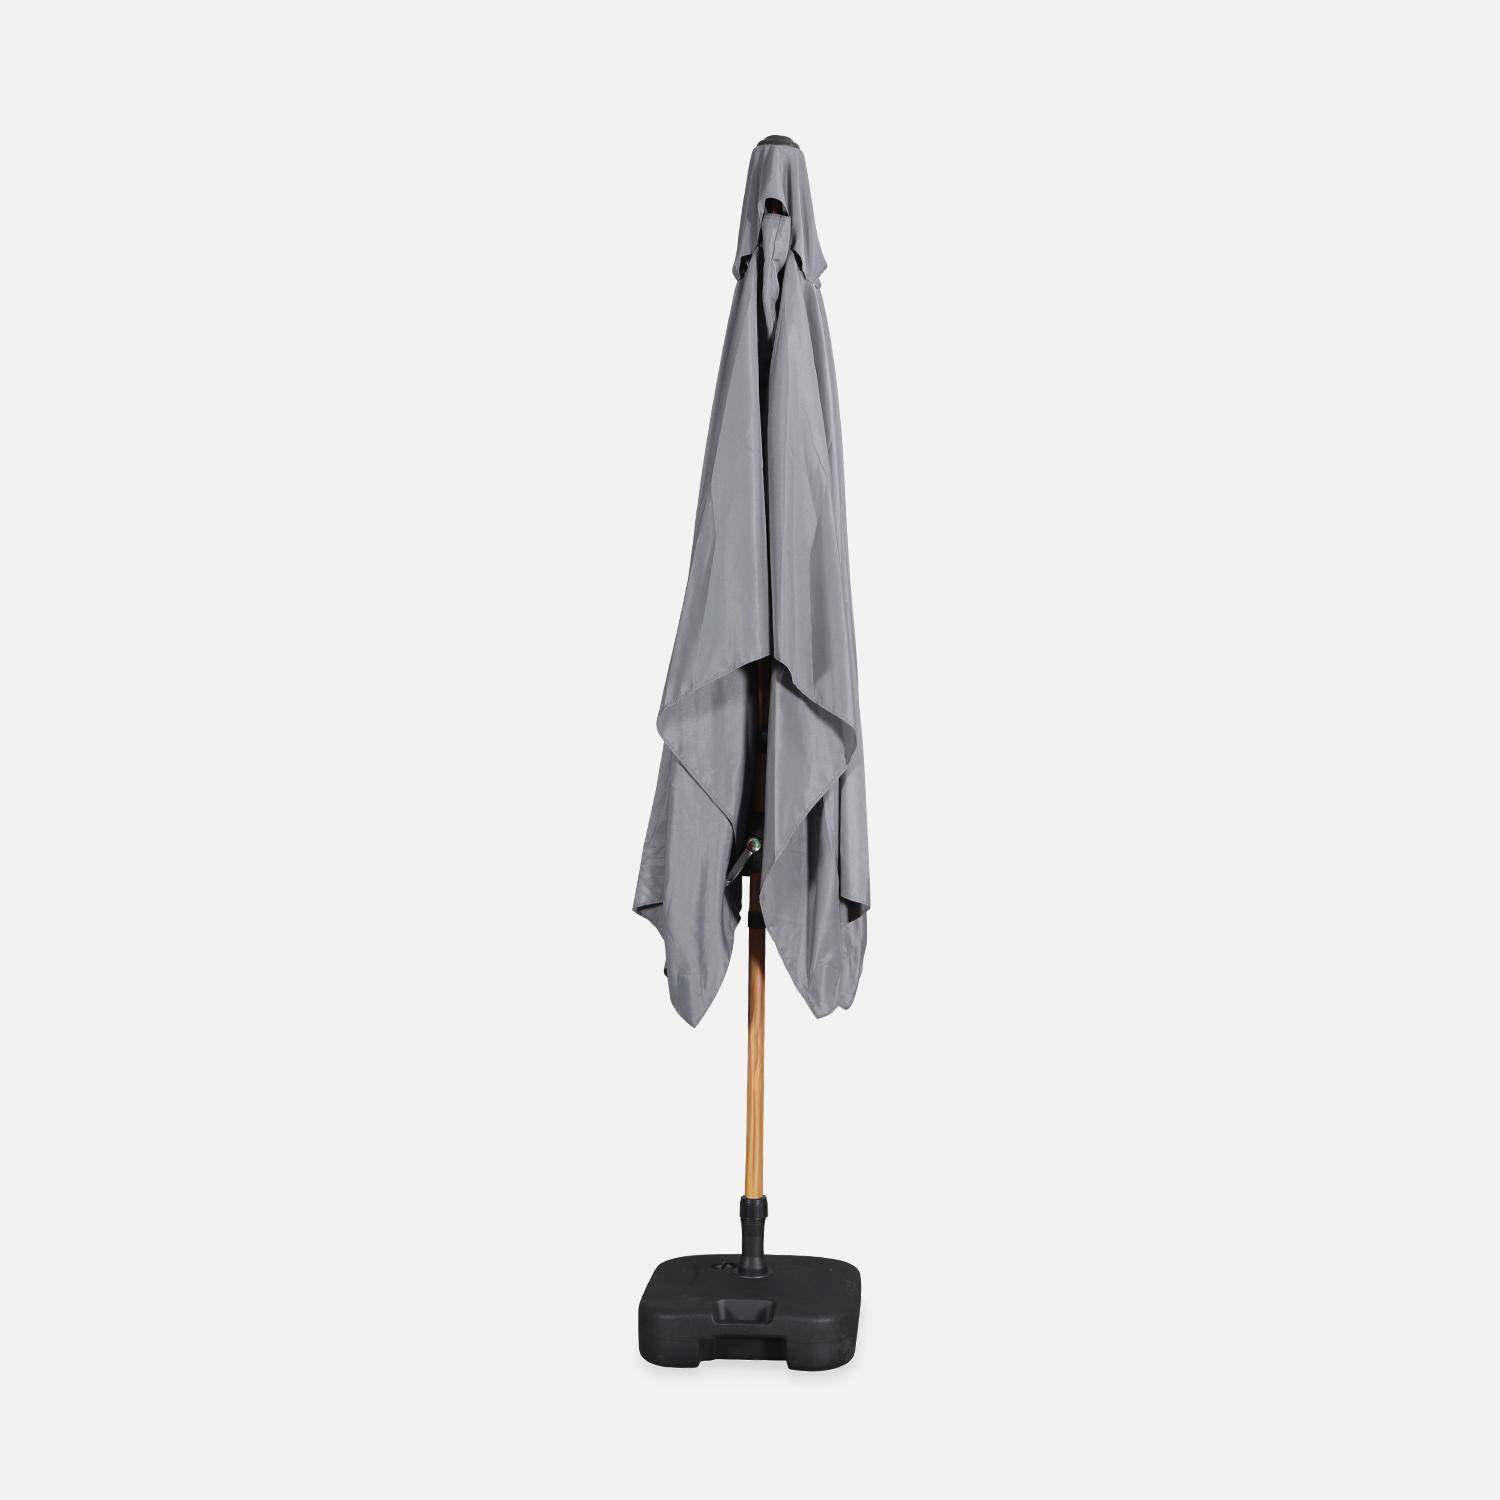 Parasol droit gris rectangulaire 2x3m, mât central imitation bois en aluminium orientable et manivelle d'ouverture Photo5